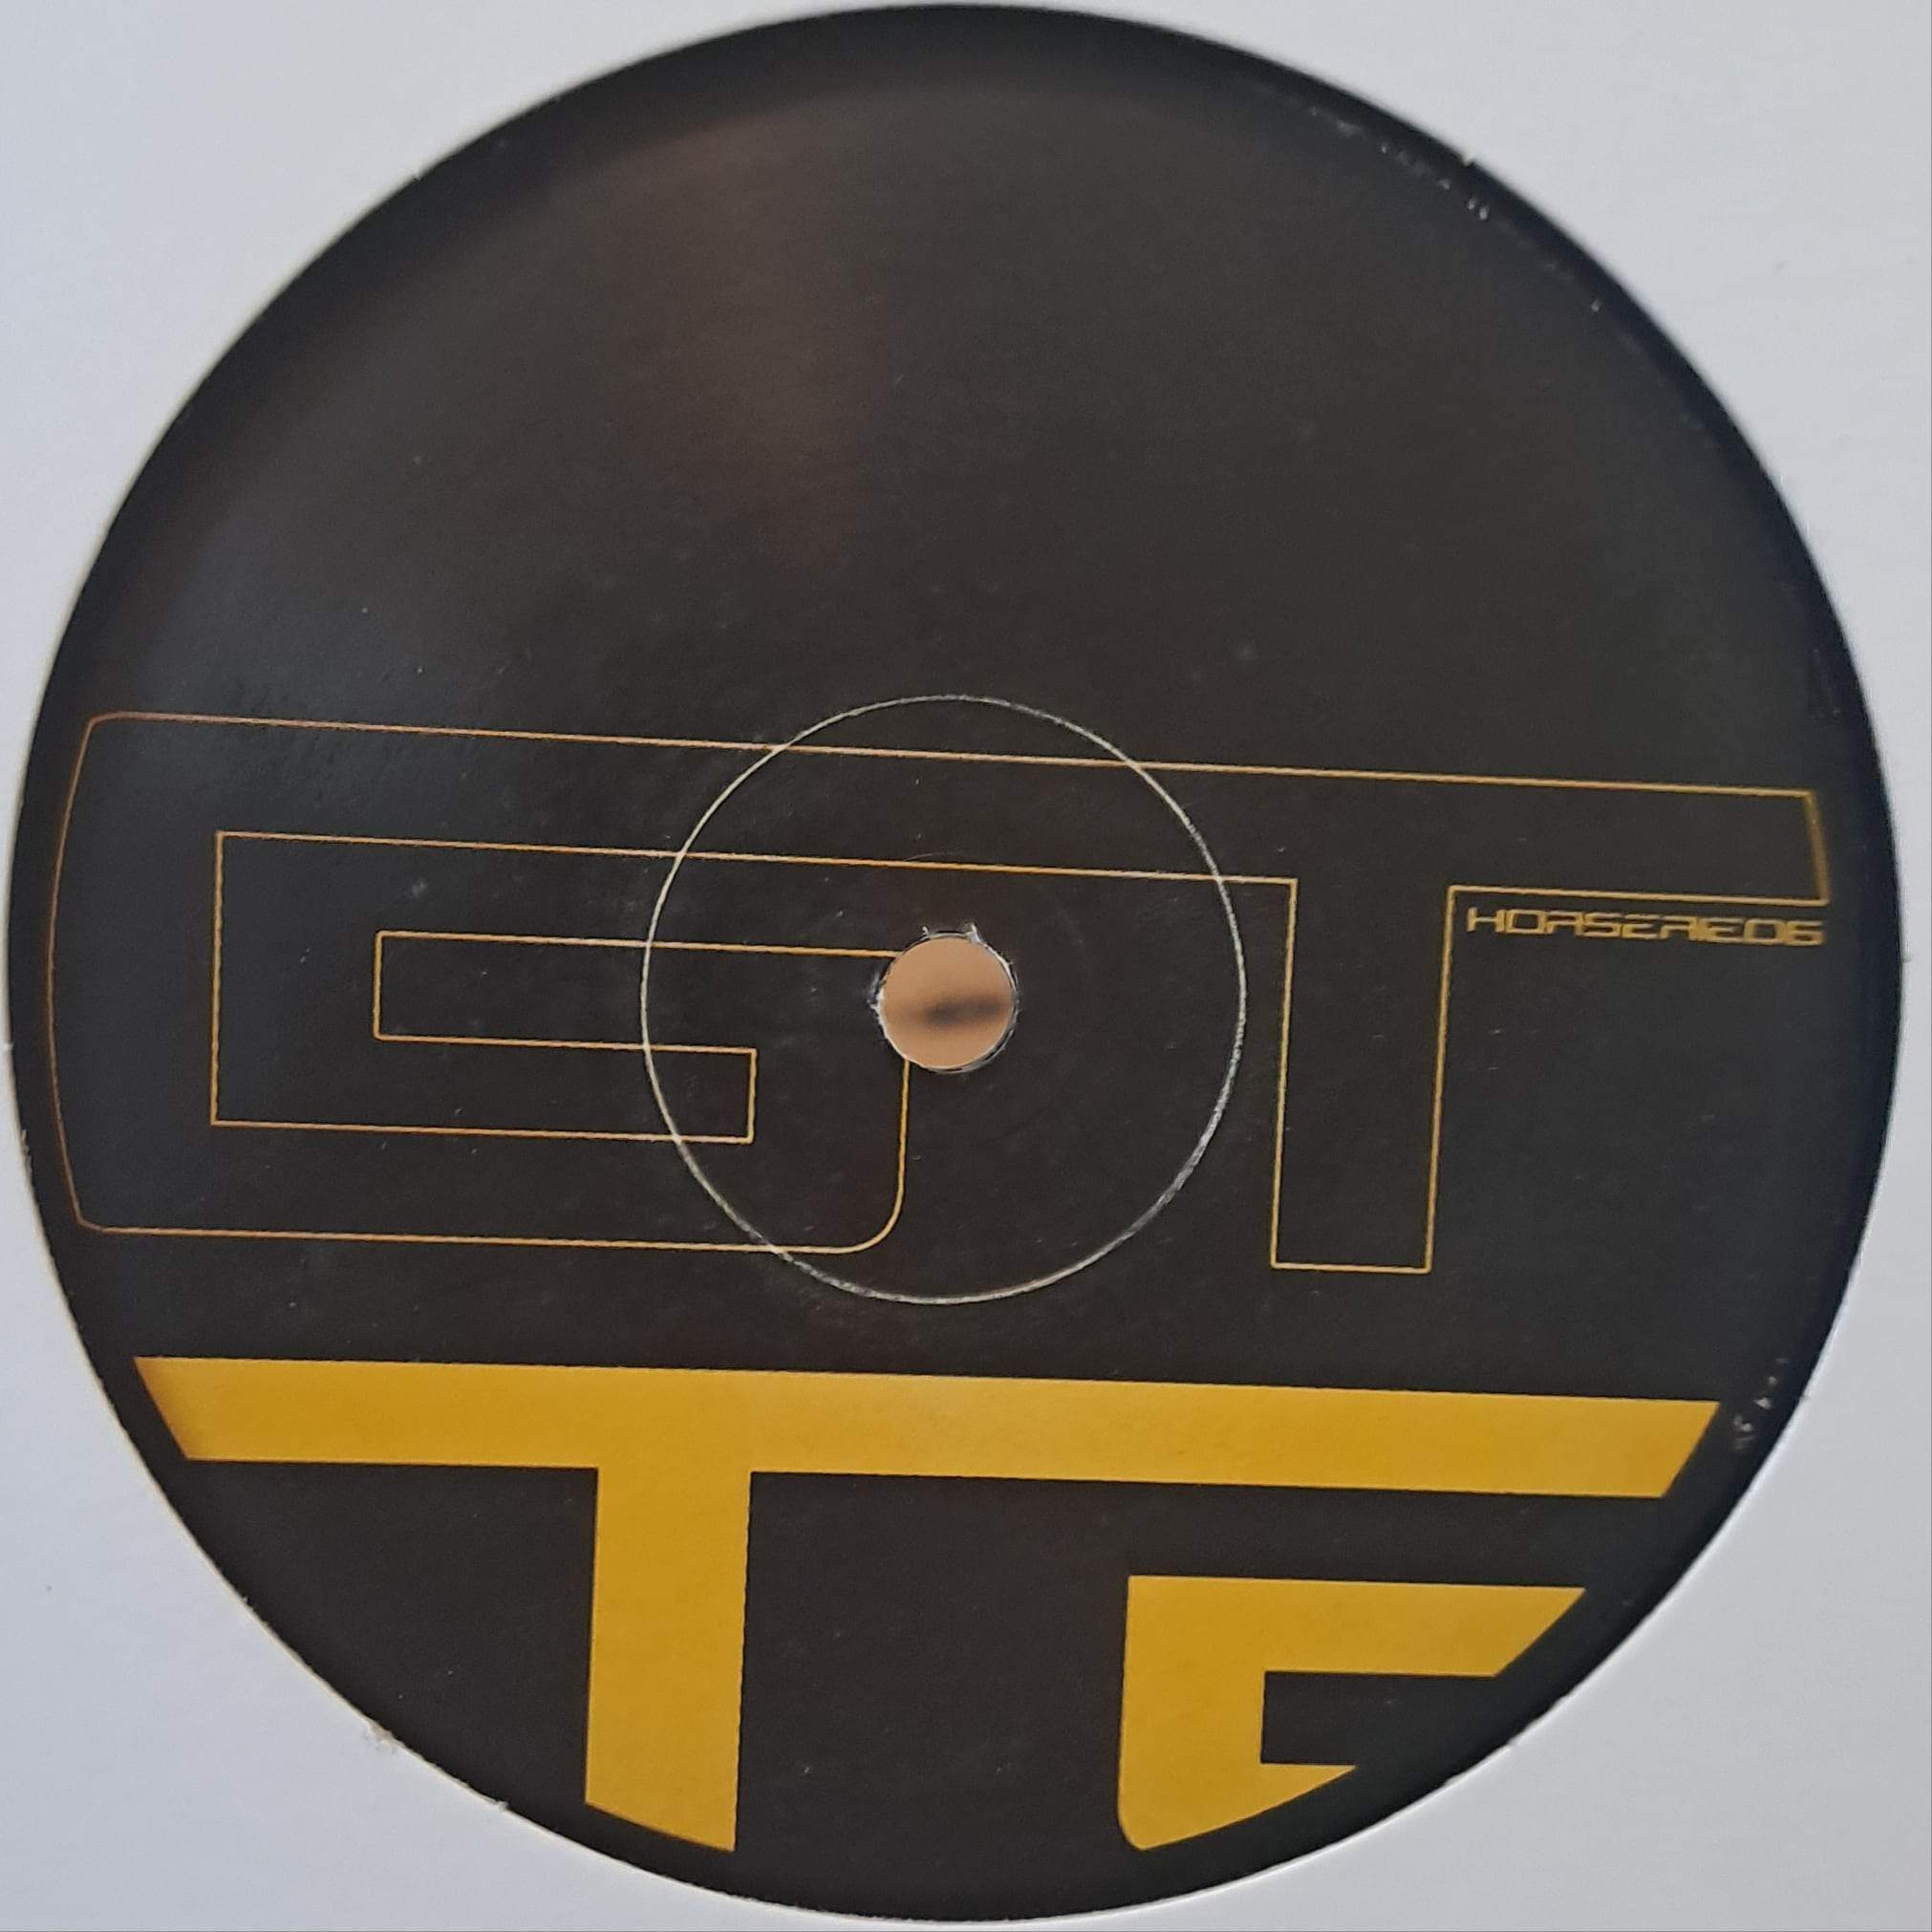 Gelstat Horserie 06 - vinyle techno